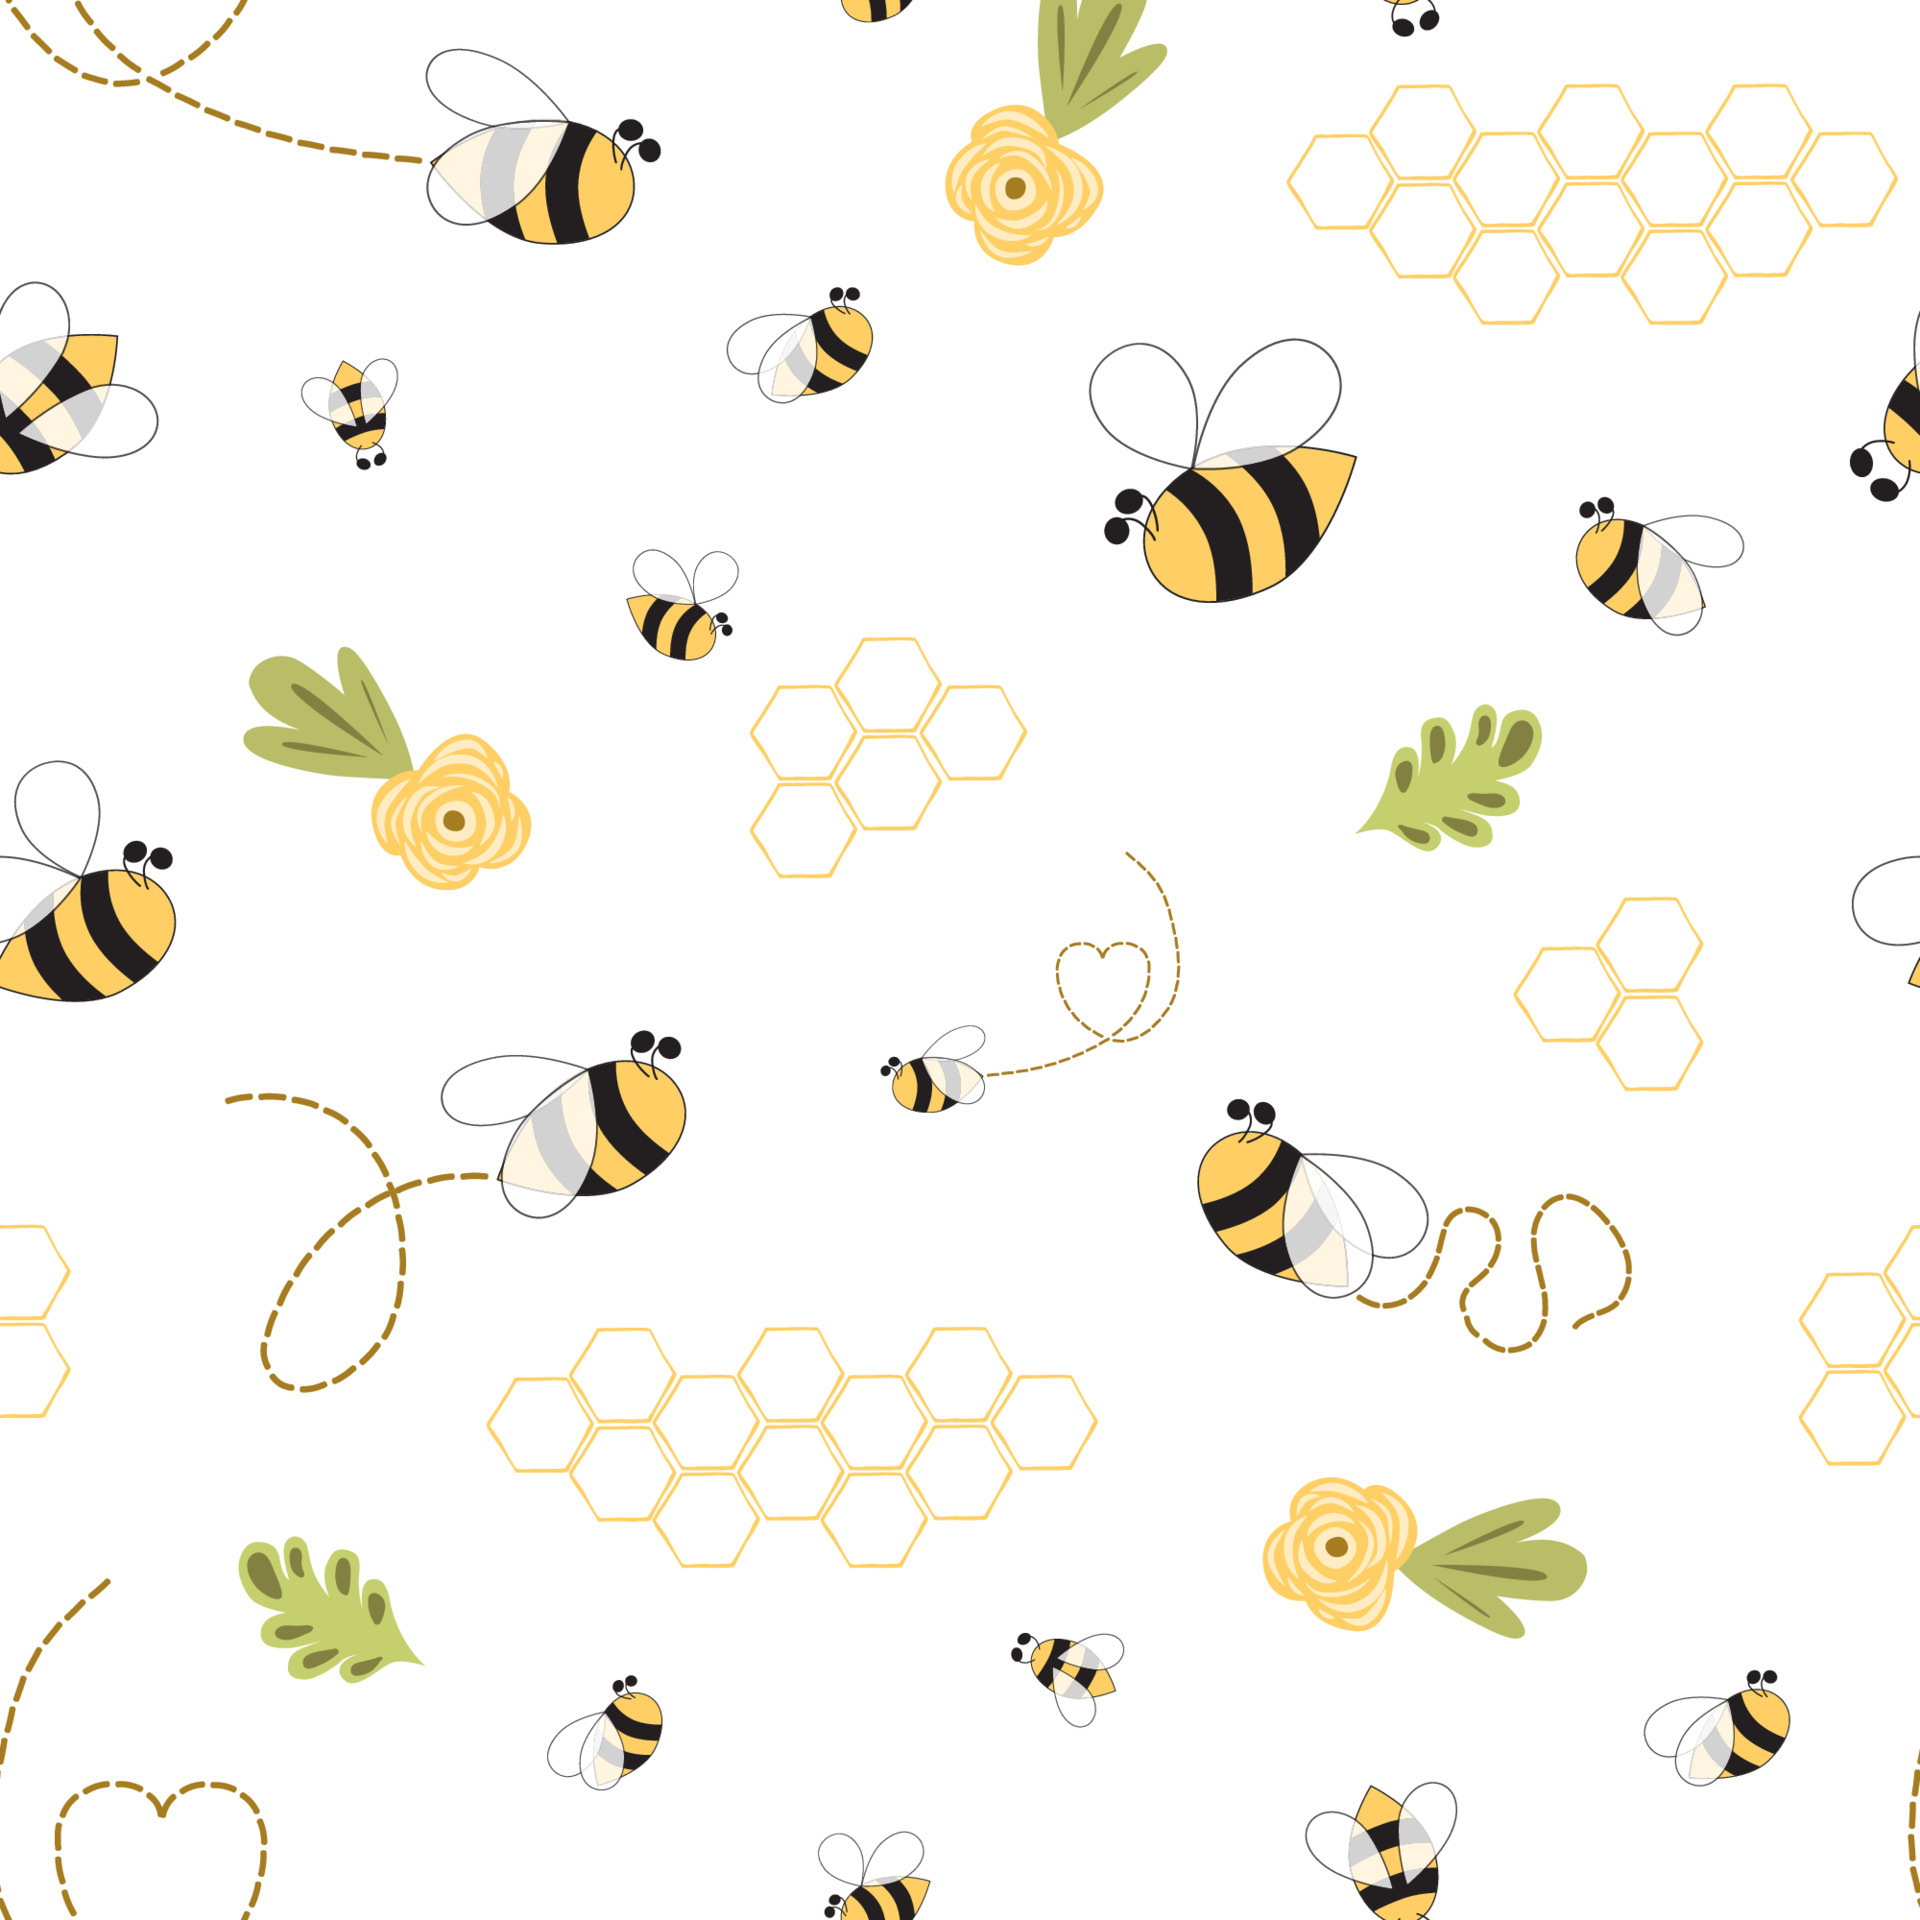 Bumblebee♡♡. Bumble bee art, Bee art, Transformers art, Bumblebee iPhone HD  phone wallpaper | Pxfuel